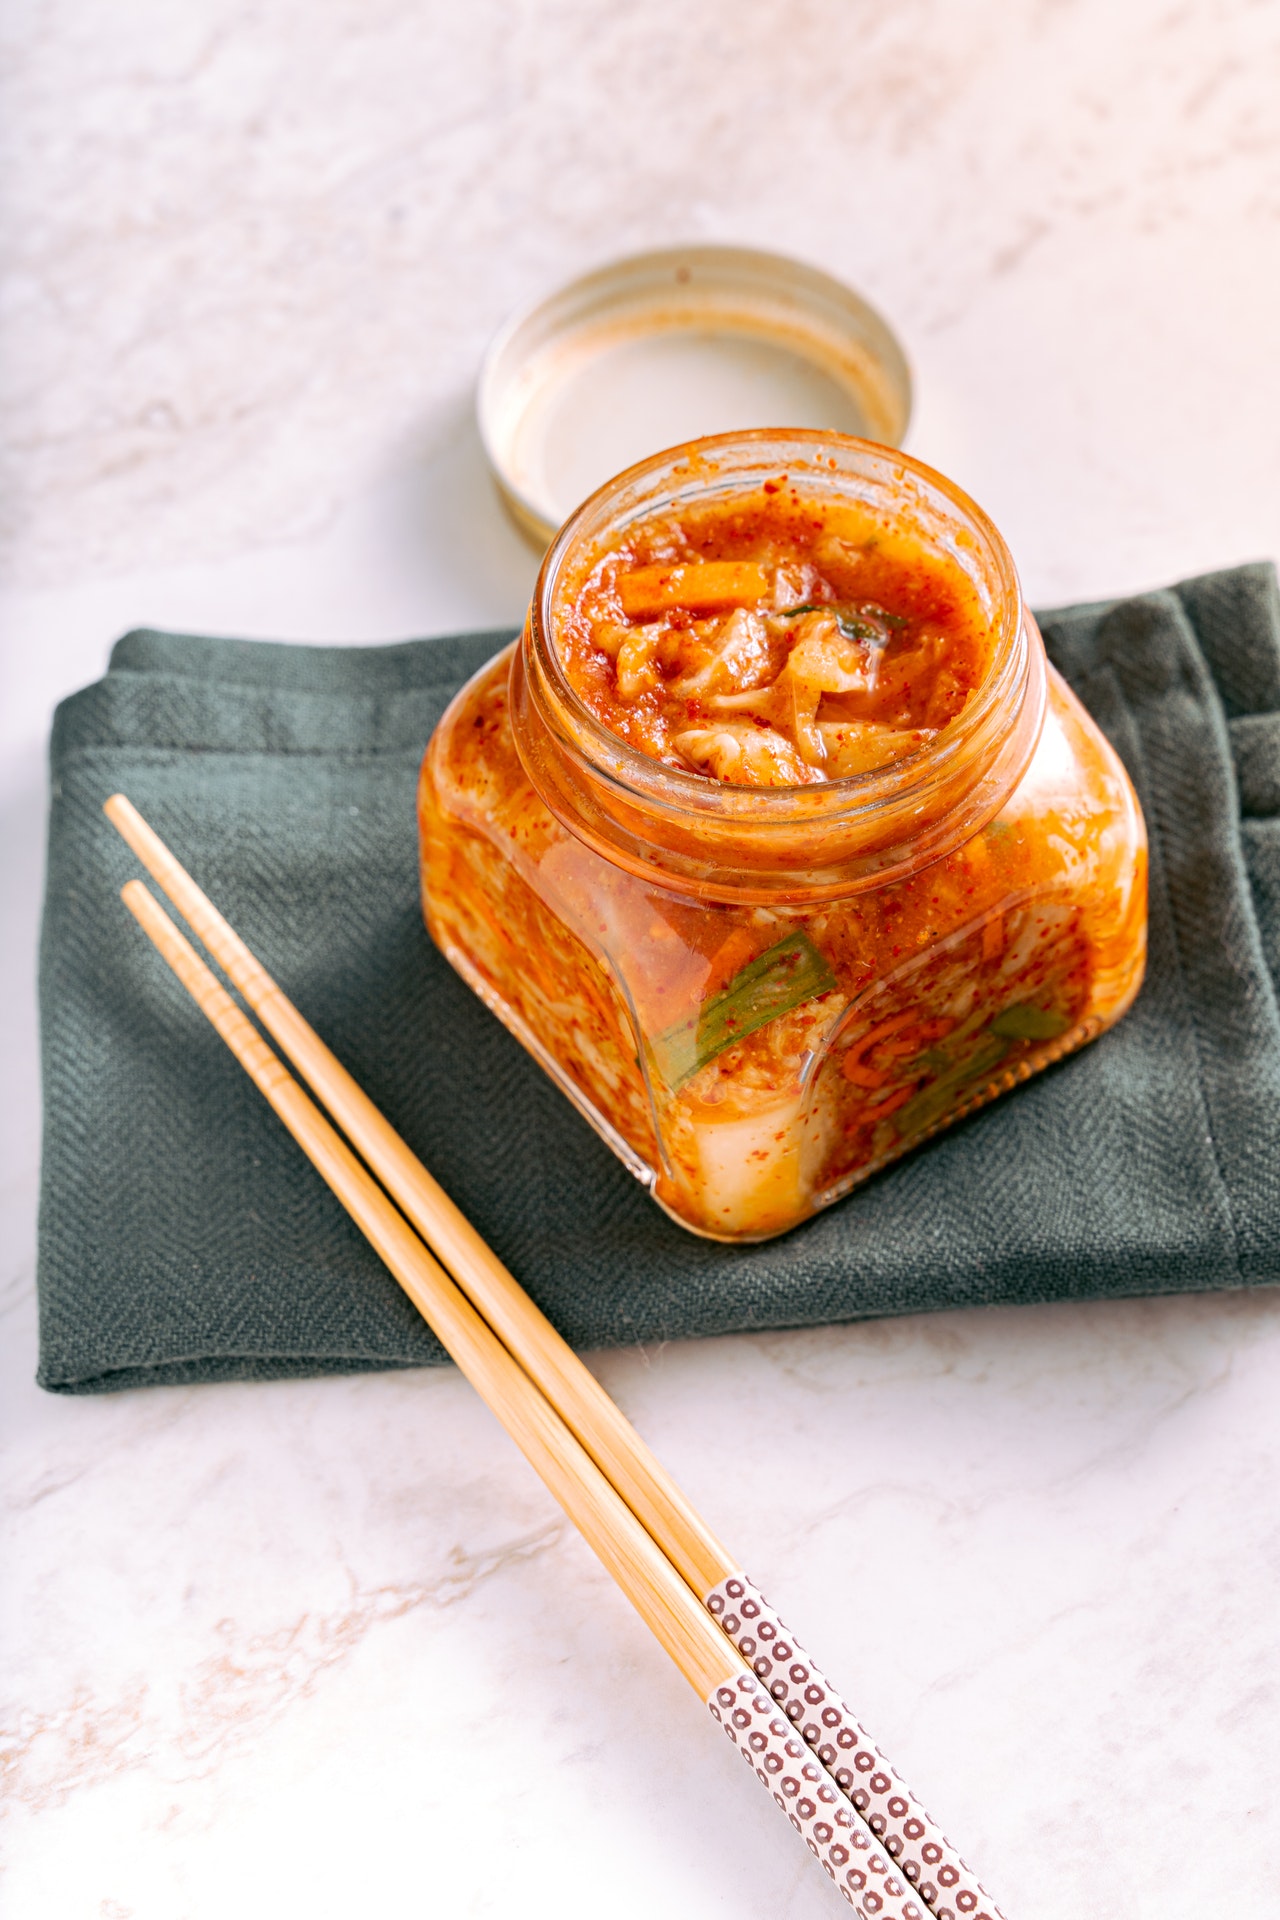 Prebiotic Vs. Probiotic Kimchi